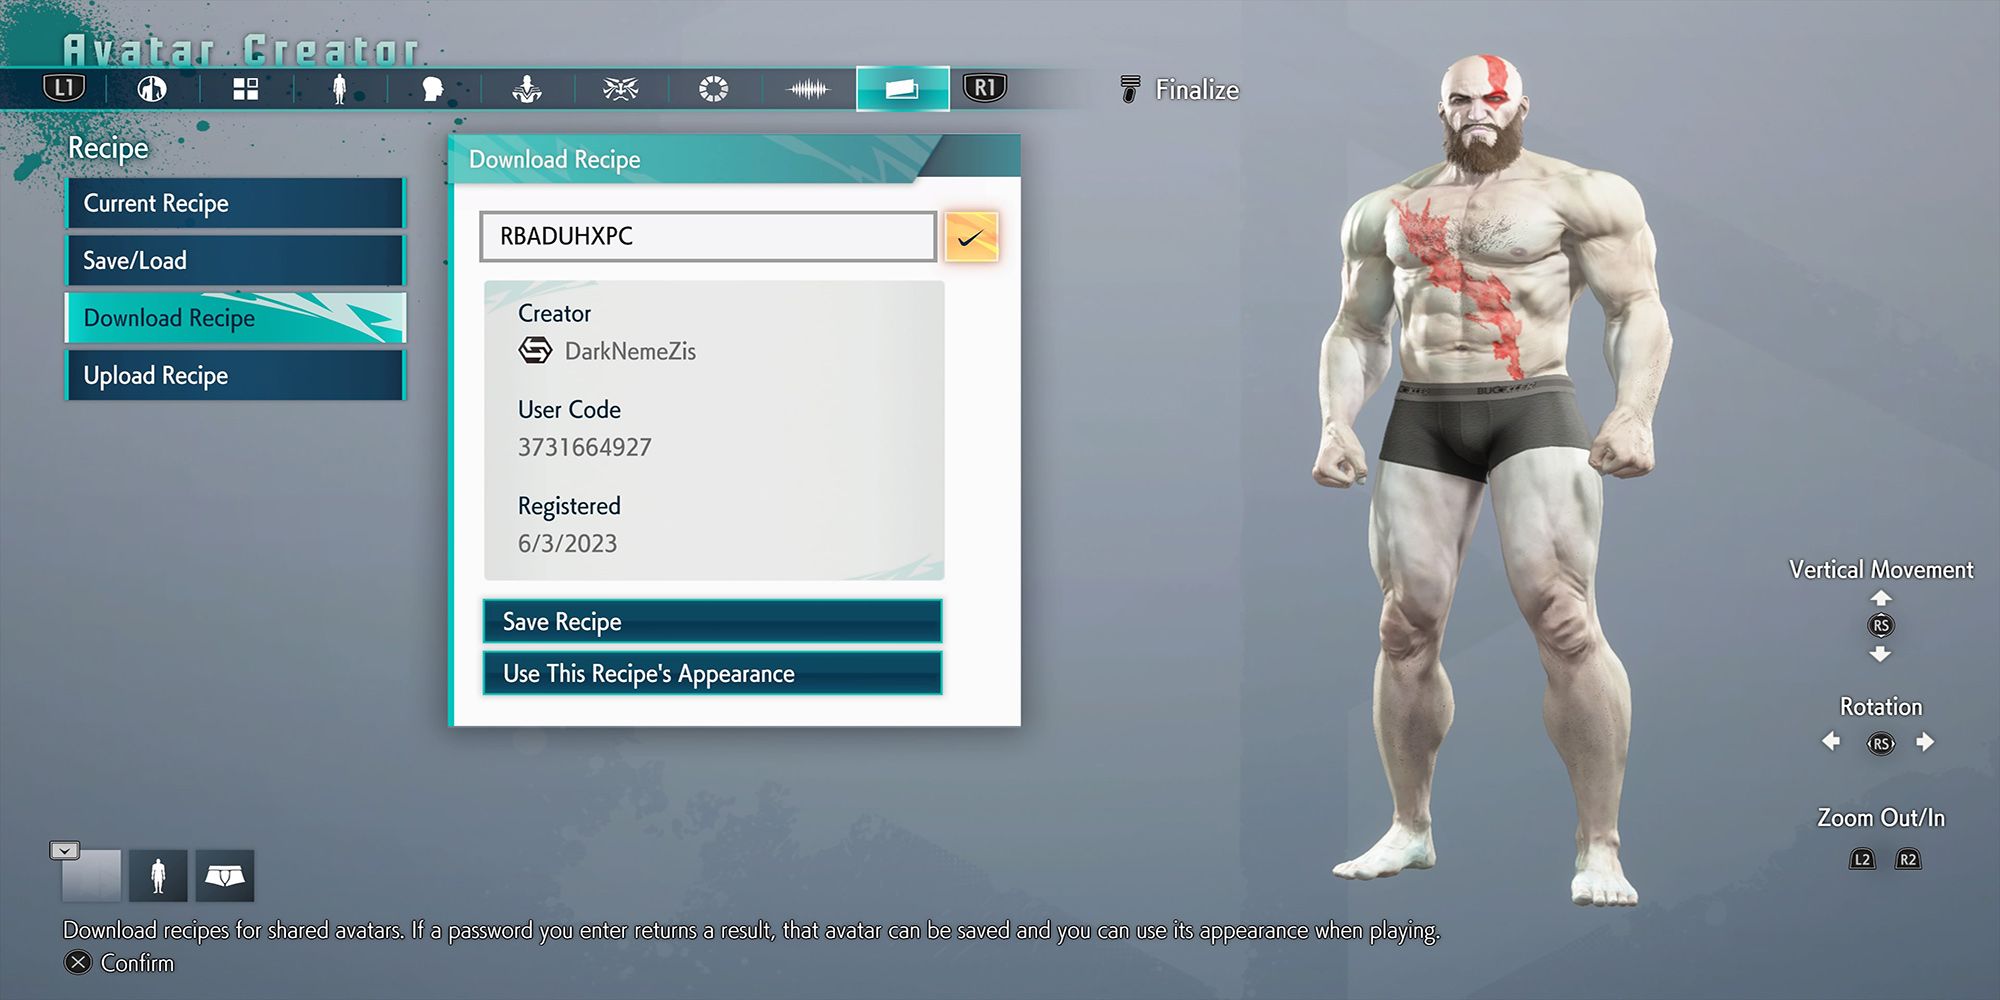 An avatar recipe modeled after God Of War's Kratos, made by Dark NemeZis for Street Fighter 6.